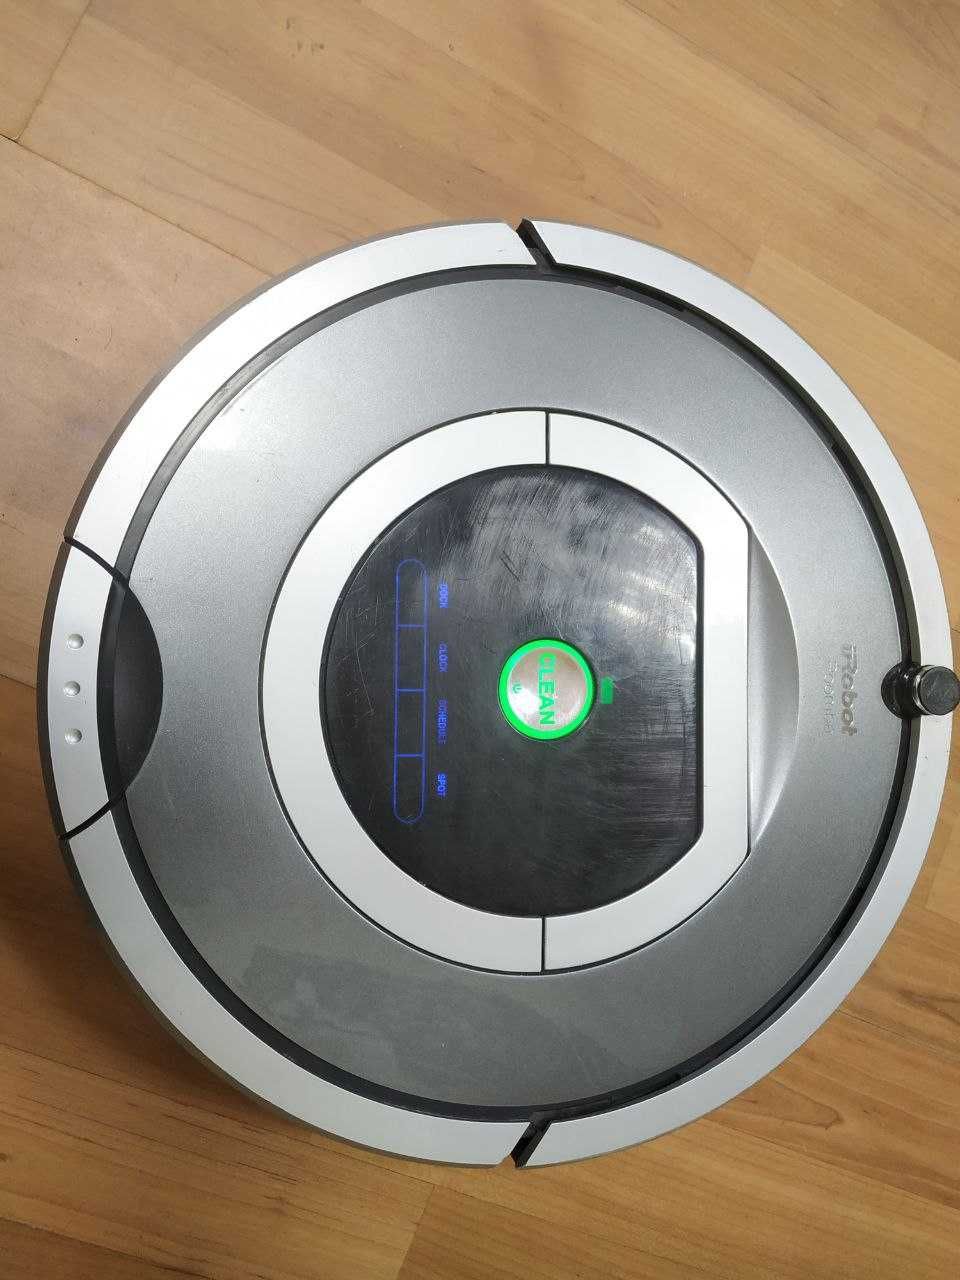 Робот-пилосос iRobot Roomba 780